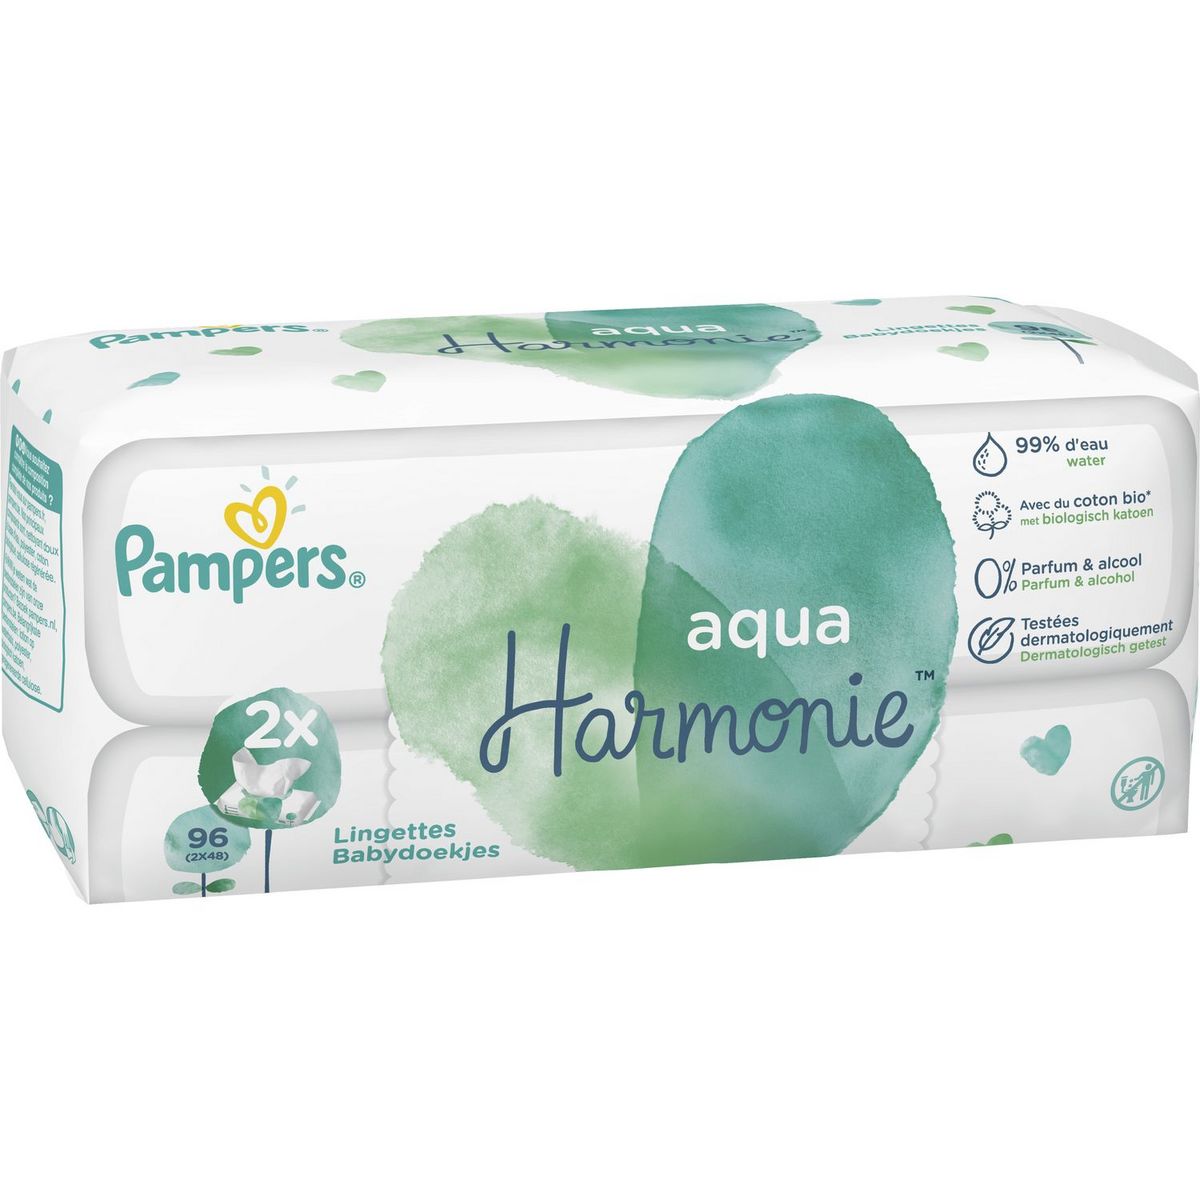 PAMPERS Aqua Harmonie lingettes au coton bio pour bébé 2x48 lingettes